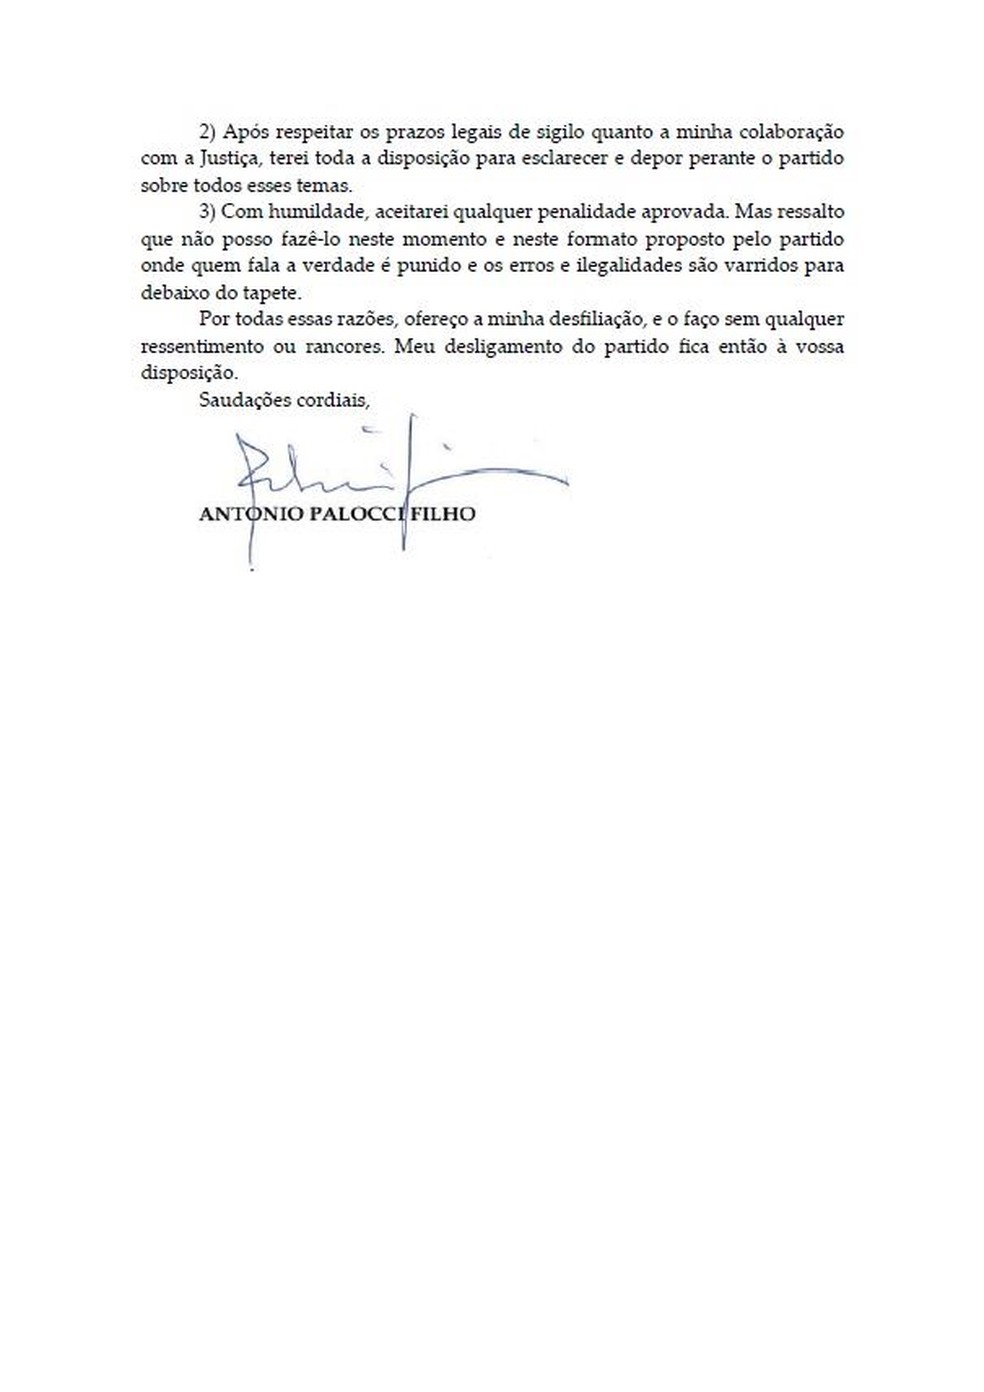 Carta Palocci 4 (Foto: Reprodução)